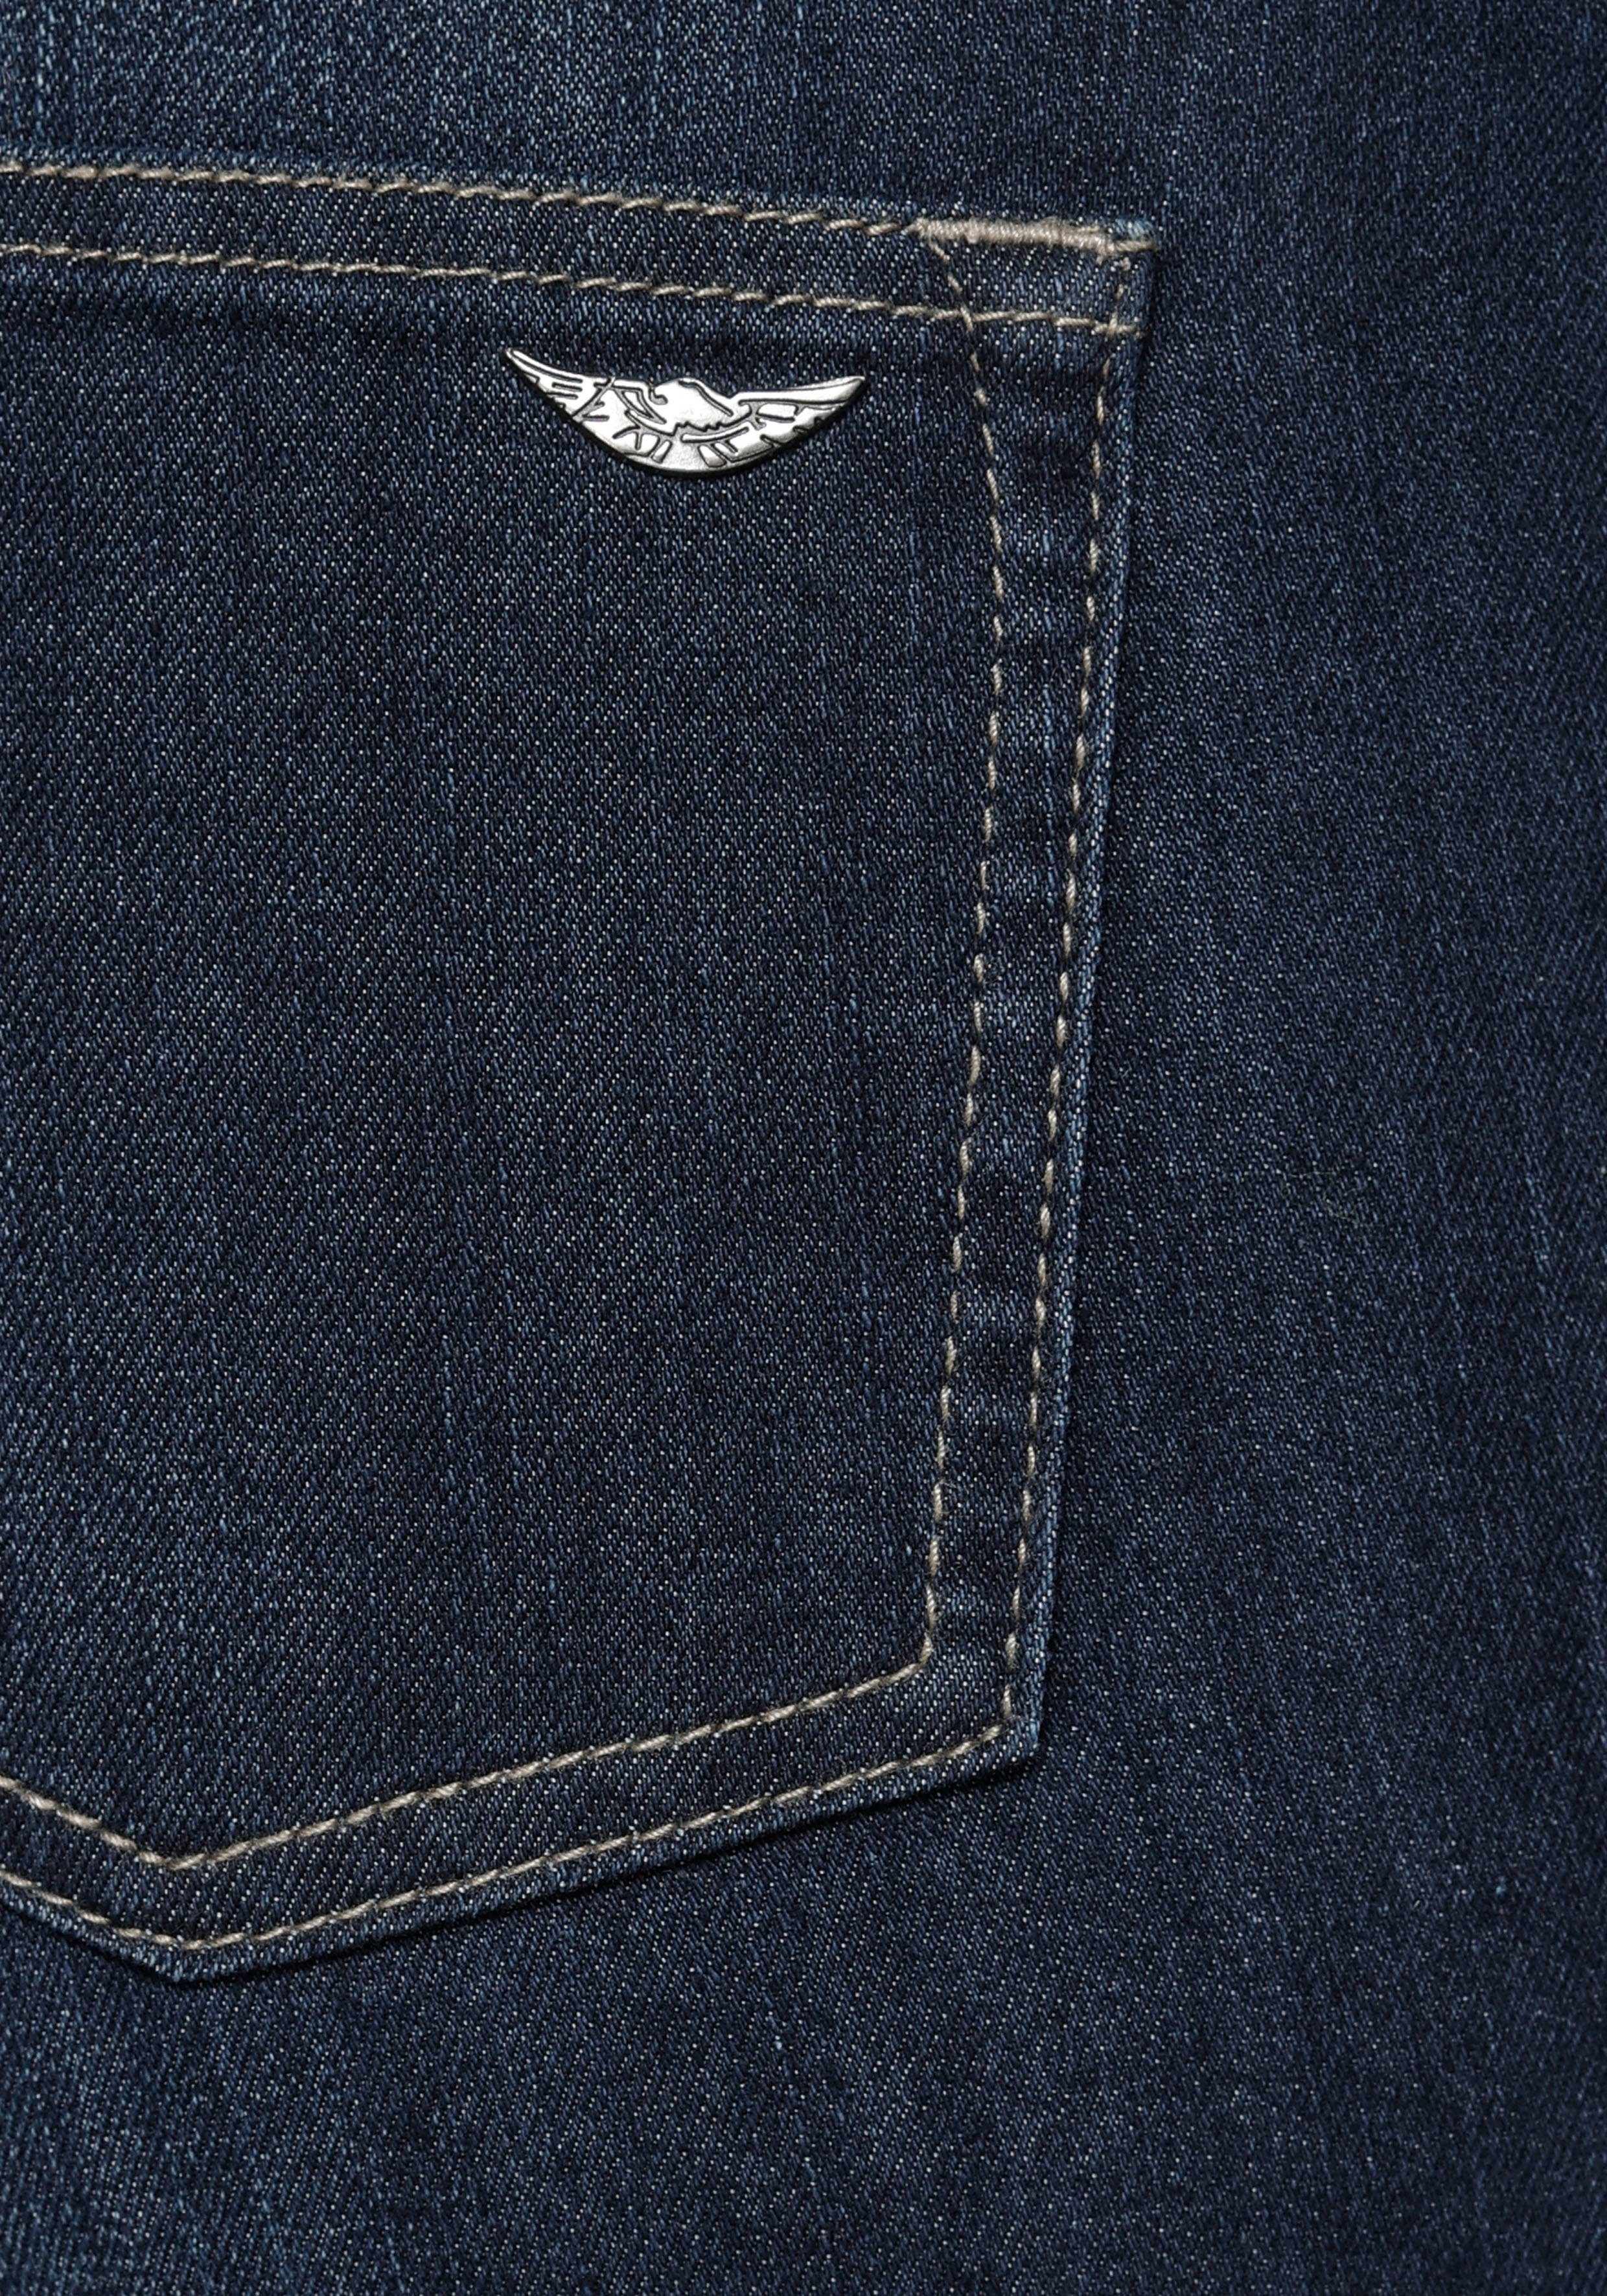 Arizona Slim-fit-Jeans High Waist mit Seitenstreifen coolem